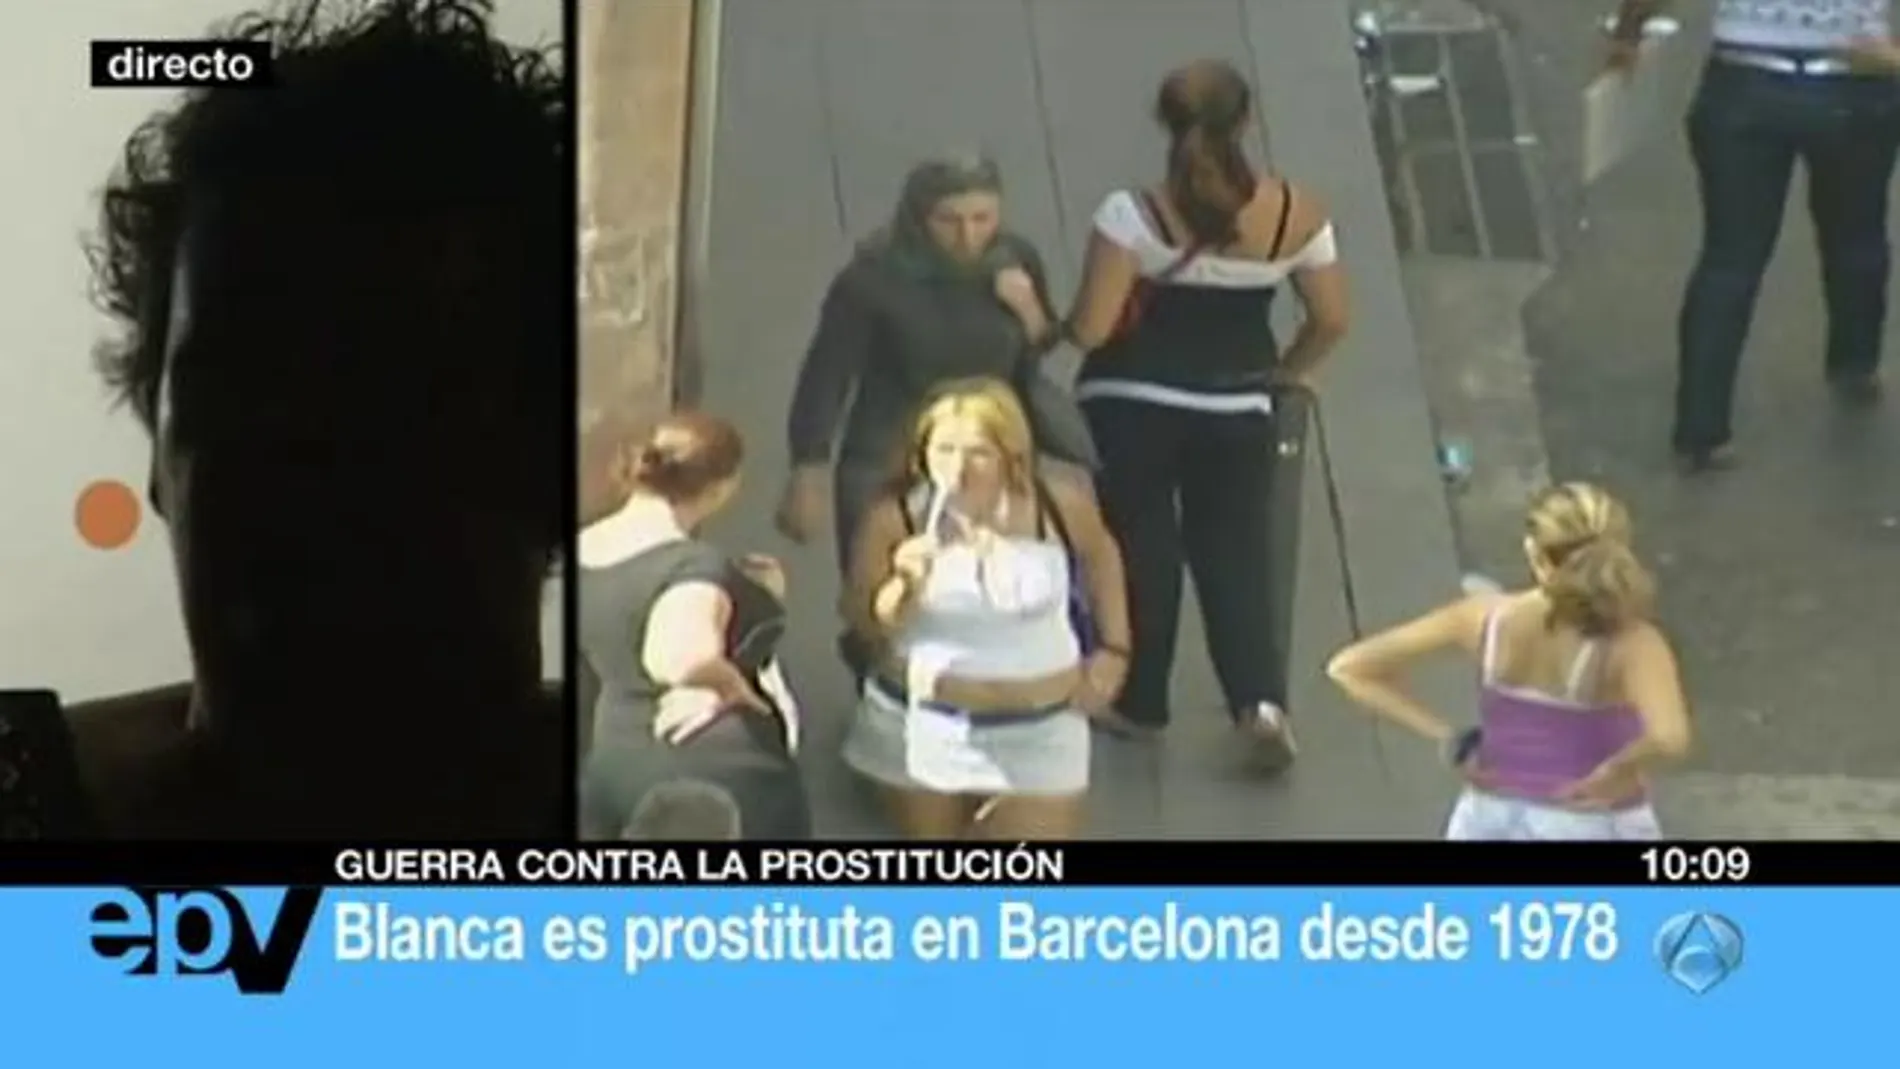 Los vecinos de Barcelona están hartos del sexo callejero